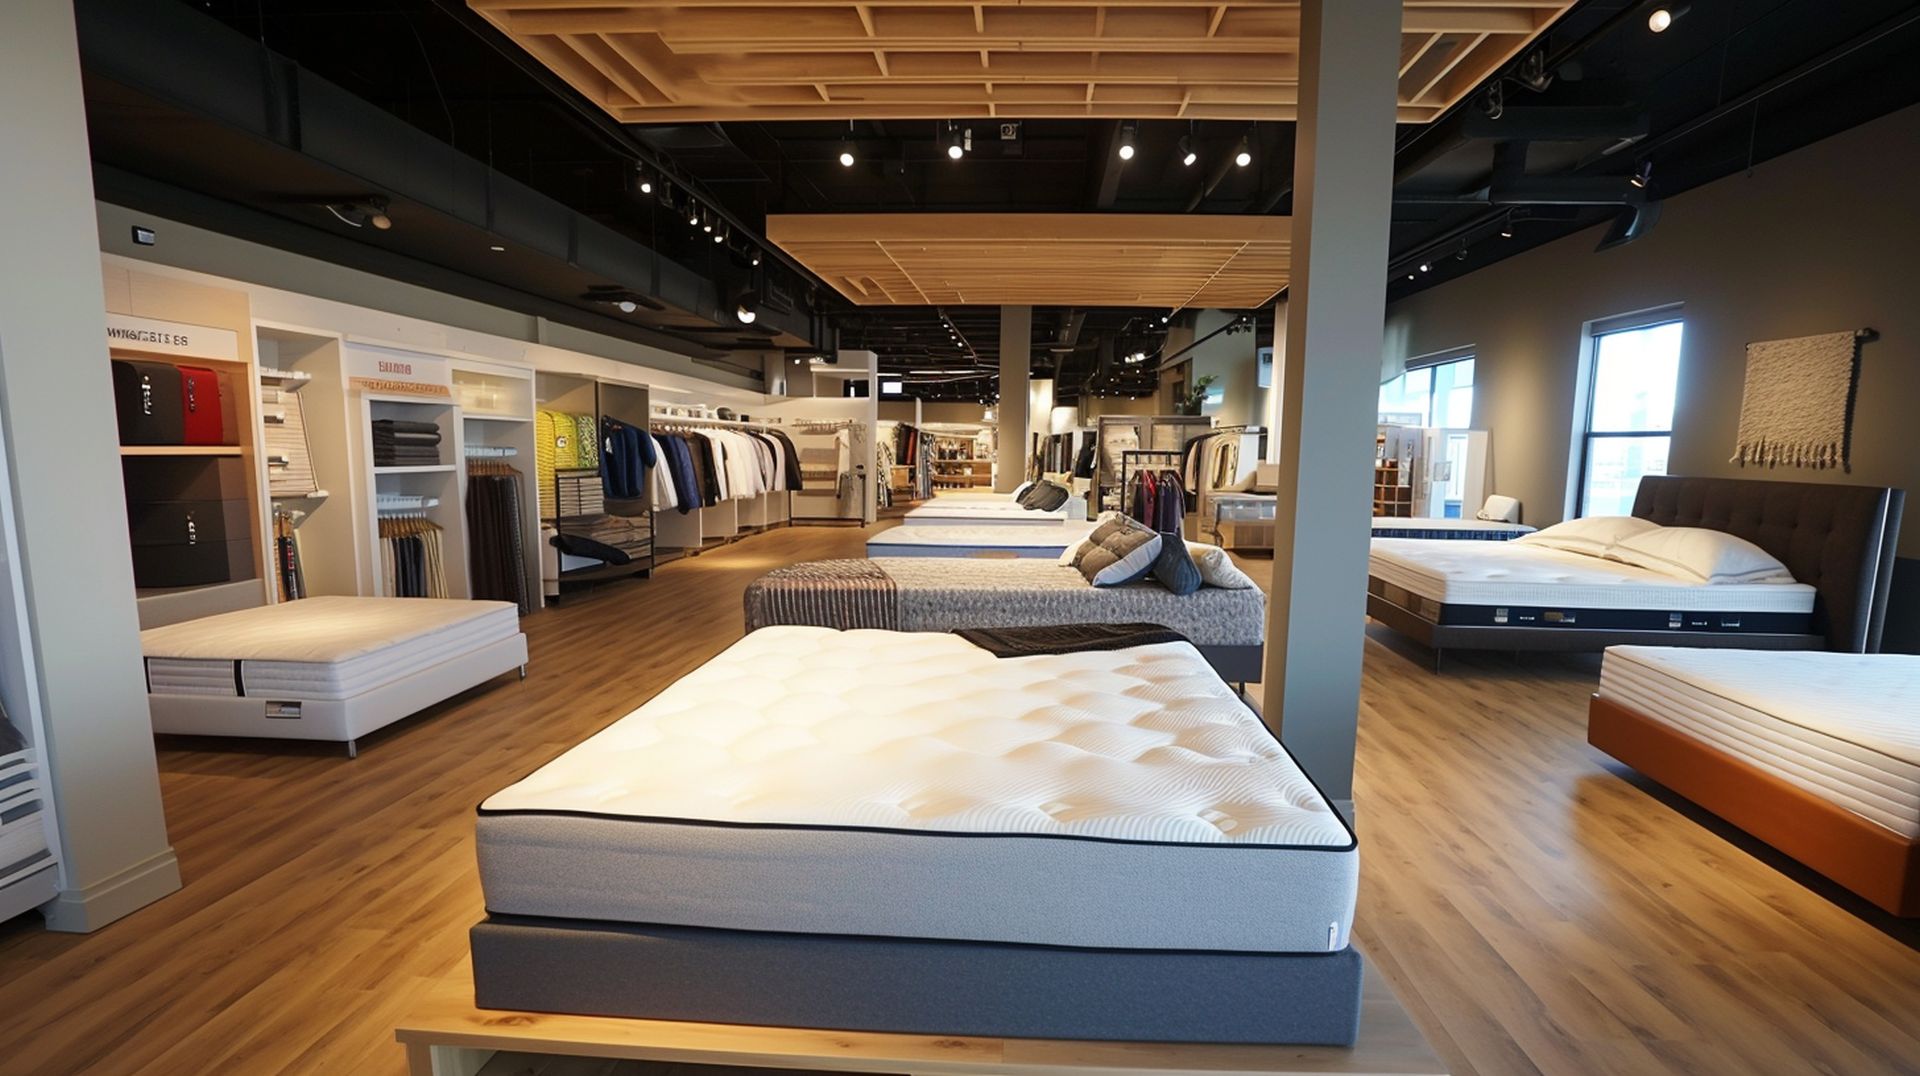 mattress stores newmattressland 033